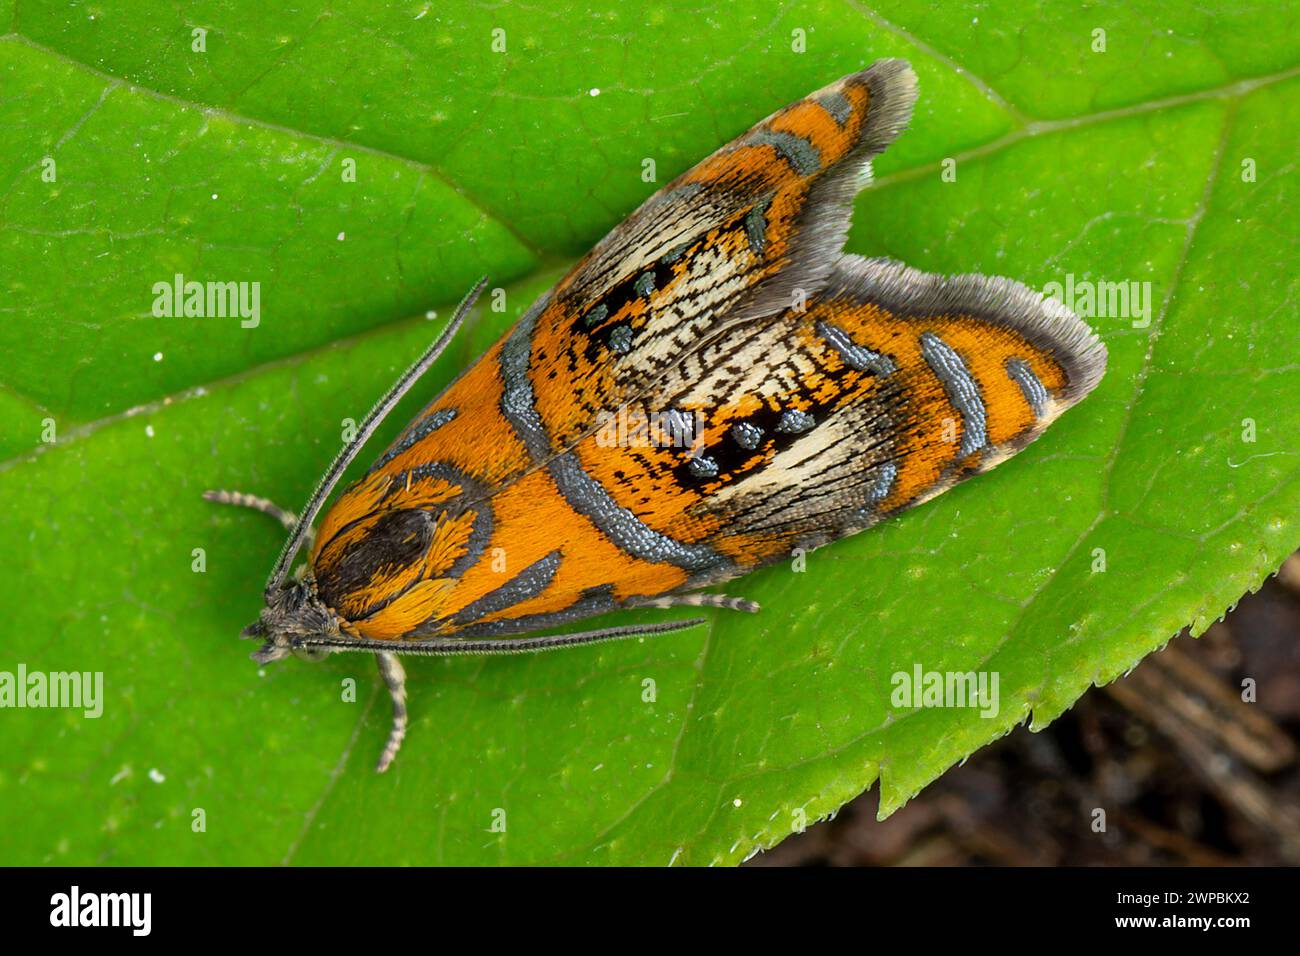 Arched Marble, tortrix moth (Olethreutes arcuella, Olethreutes arcuana), sitting on a leaf, Germany, Bavaria, Murnauer Moos Stock Photo